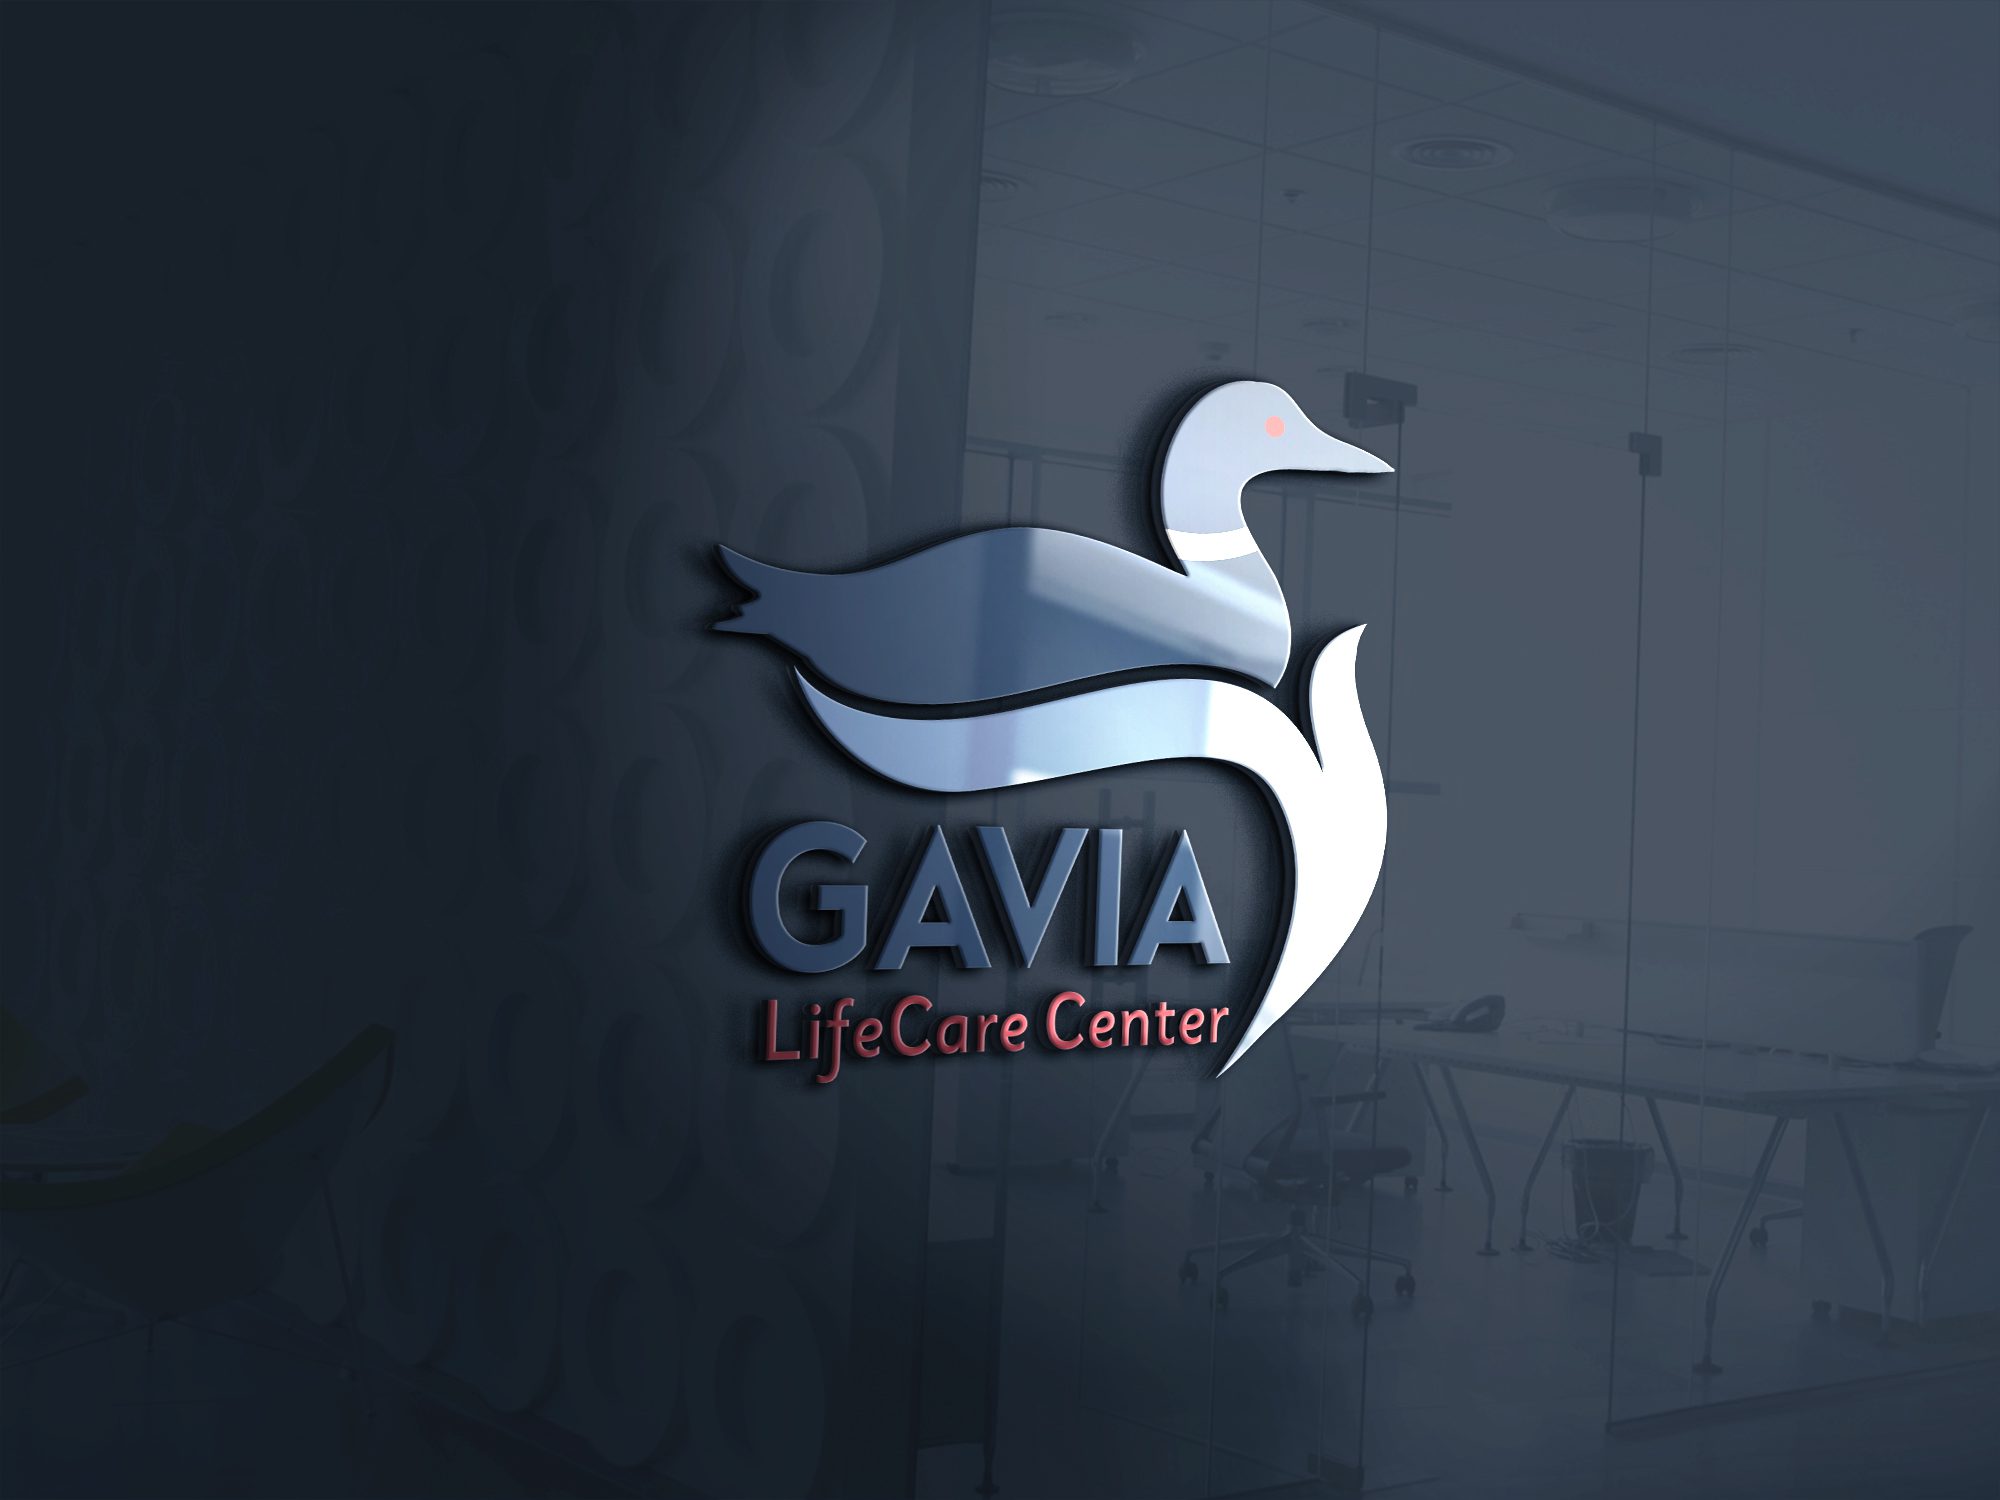 Gavia LifeCare Center